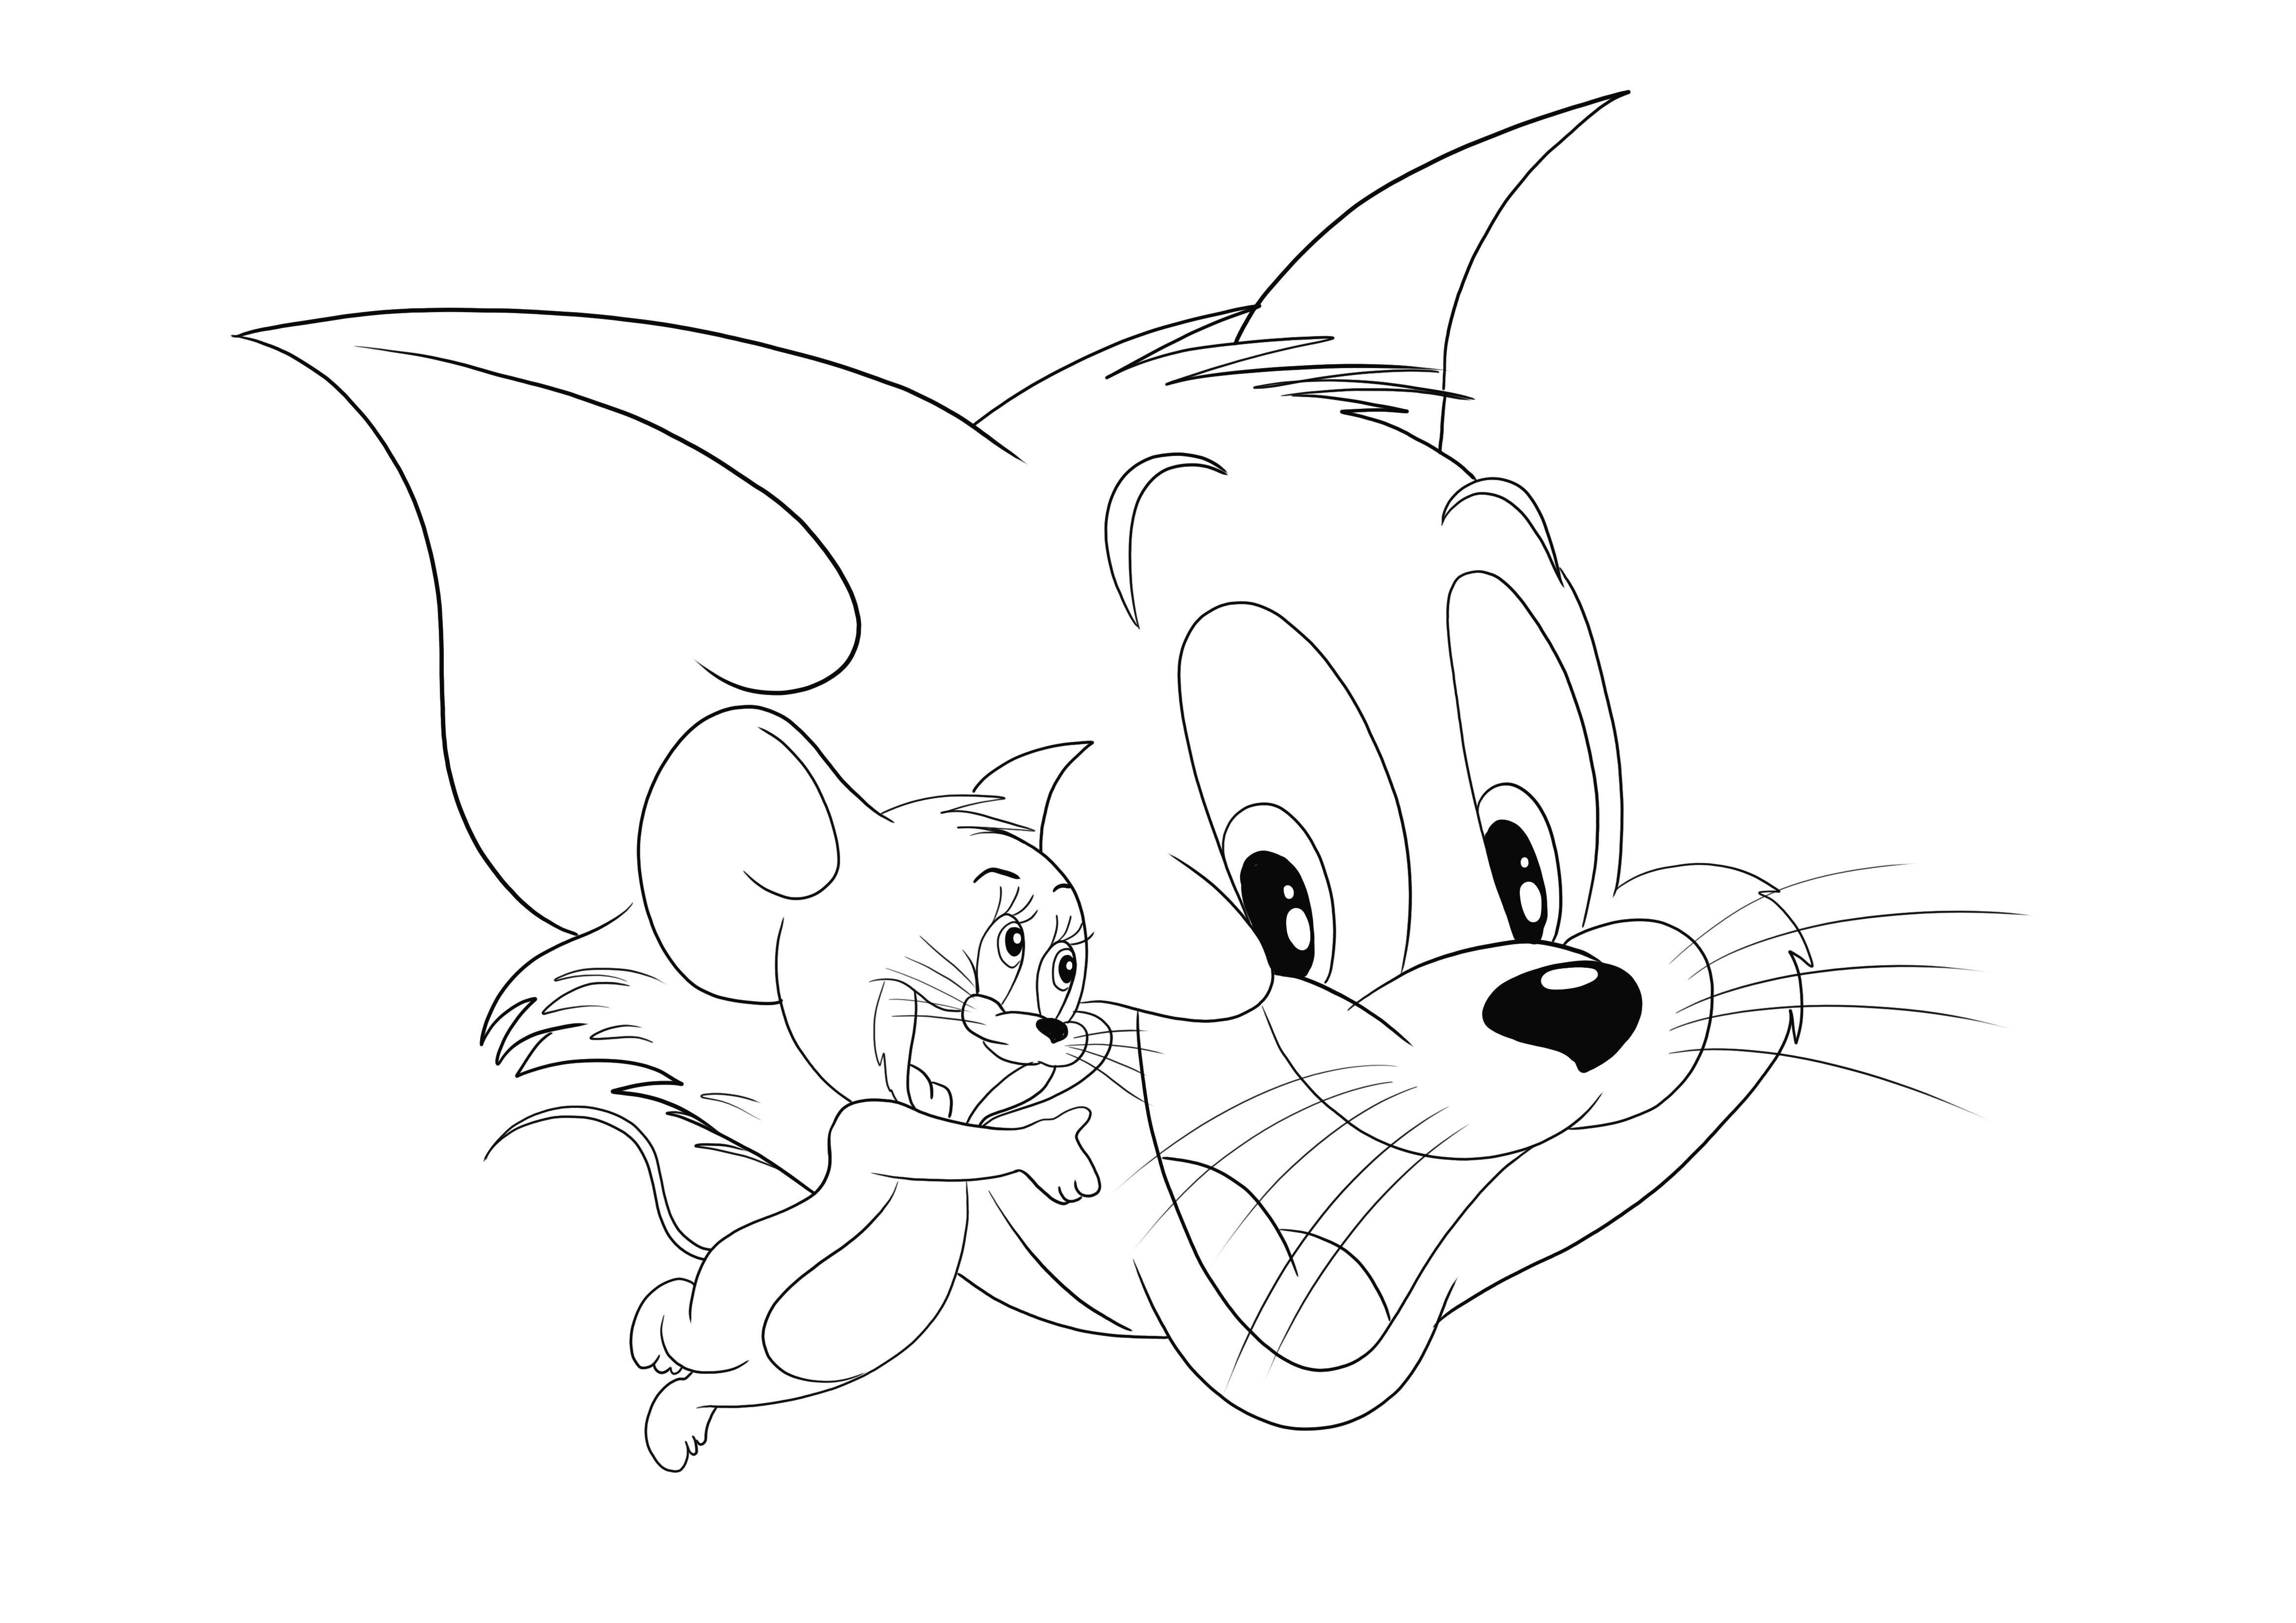 Tom And Jerry et leurs visages joyeux attendent d'être téléchargés et coloriés par leurs petits fans